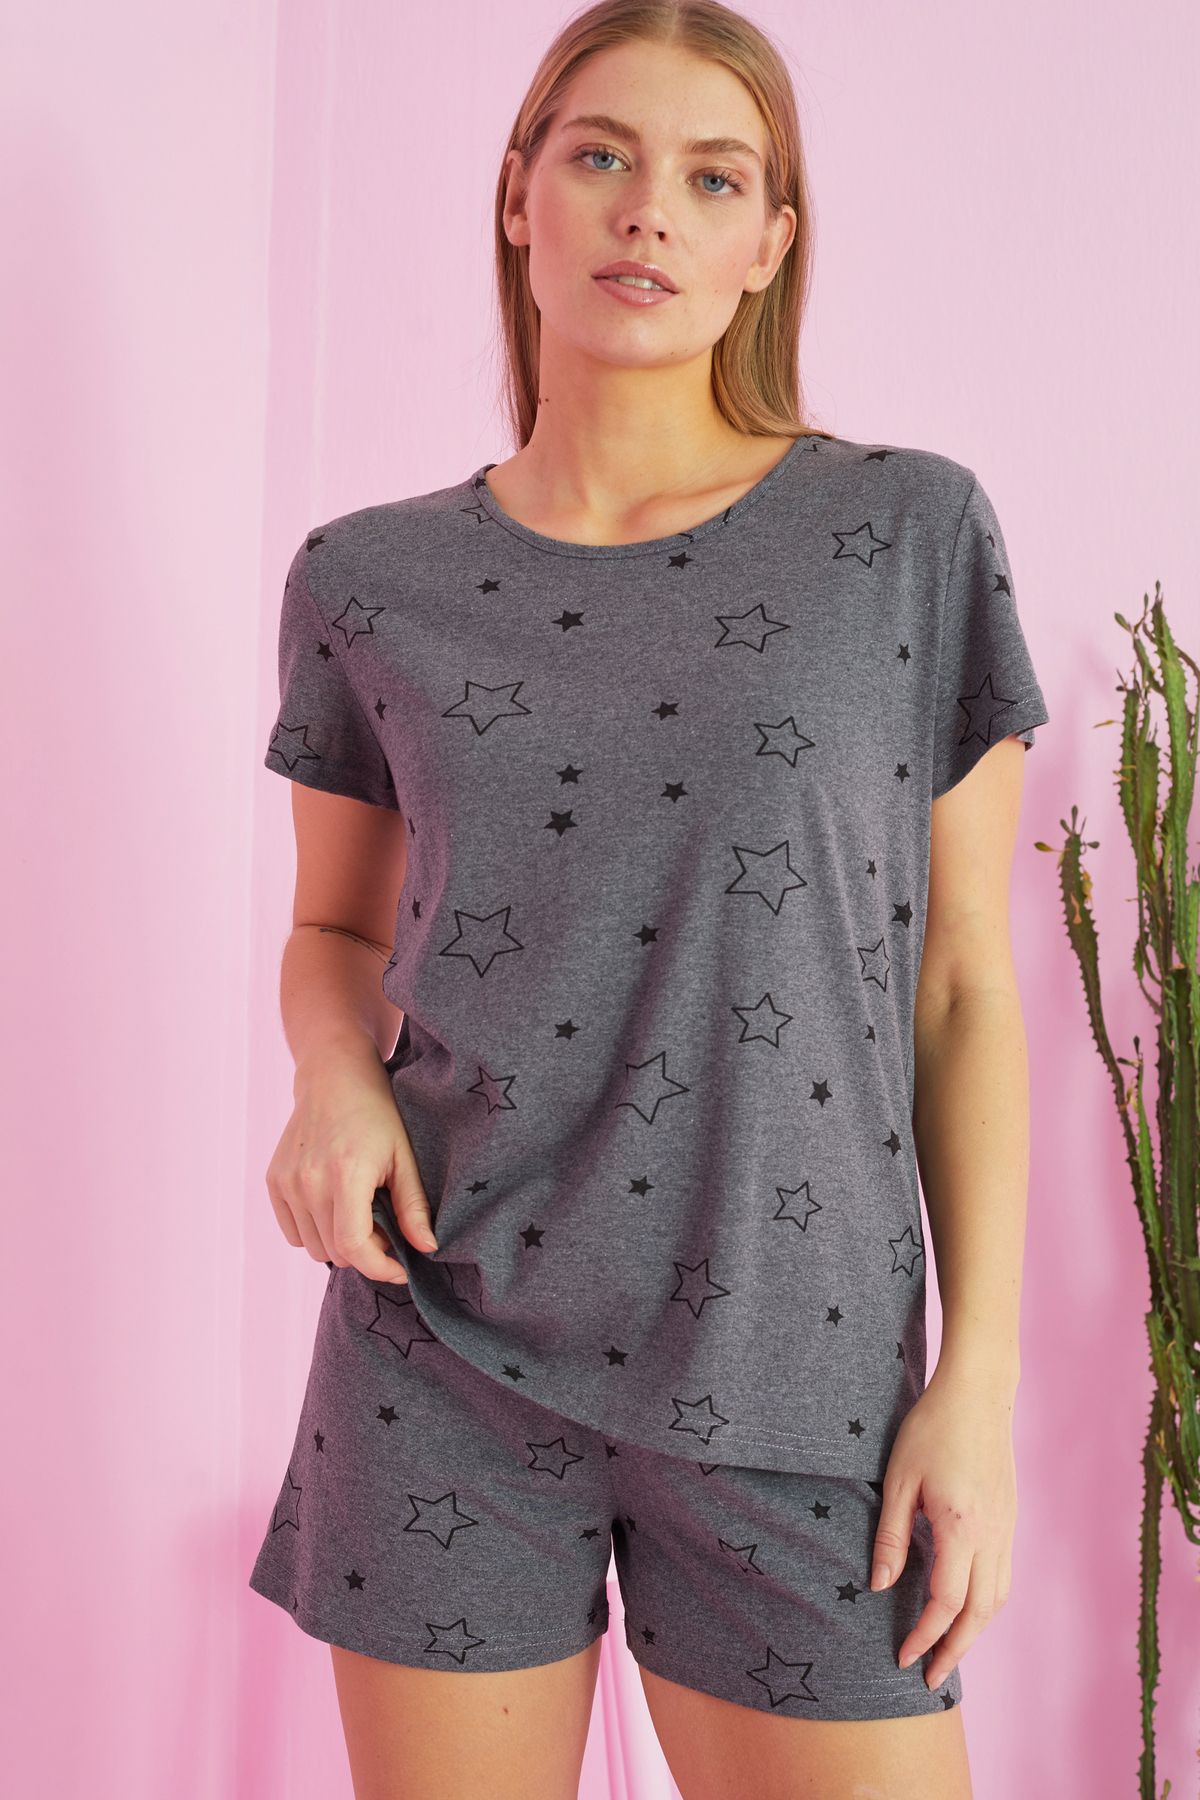 Siyah İnci antrasit yıldız desenli Pamuklu Şort-Pijama Takım